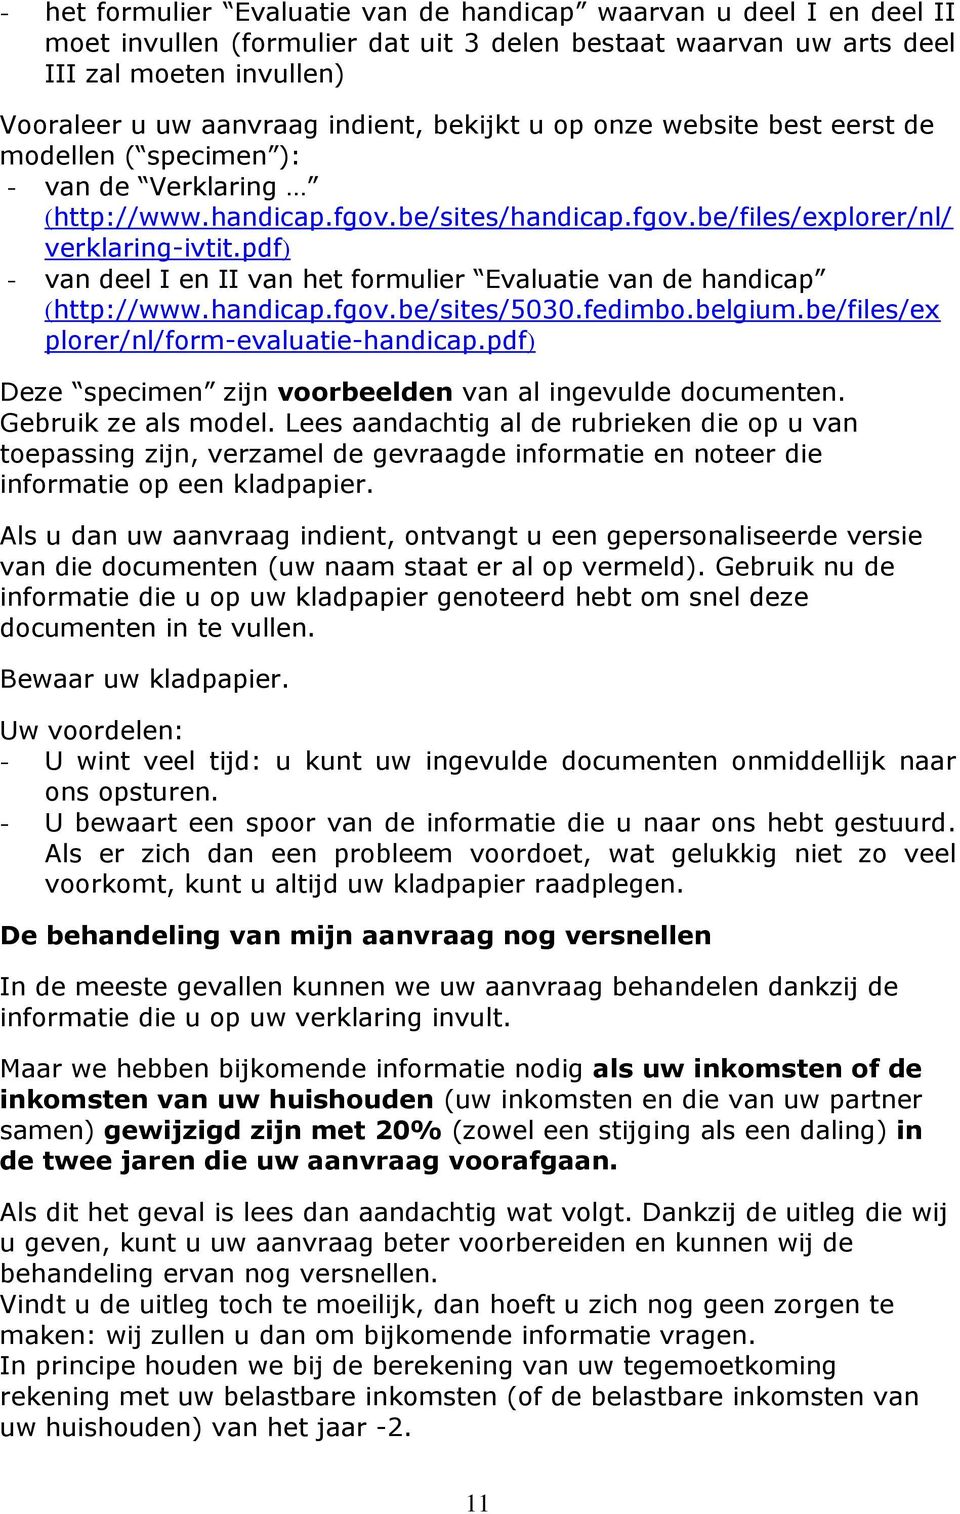 pdf) - van deel I en II van het formulier Evaluatie van de handicap (http://www.handicap.fgov.be/sites/5030.fedimbo.belgium.be/files/ex plorer/nl/form-evaluatie-handicap.